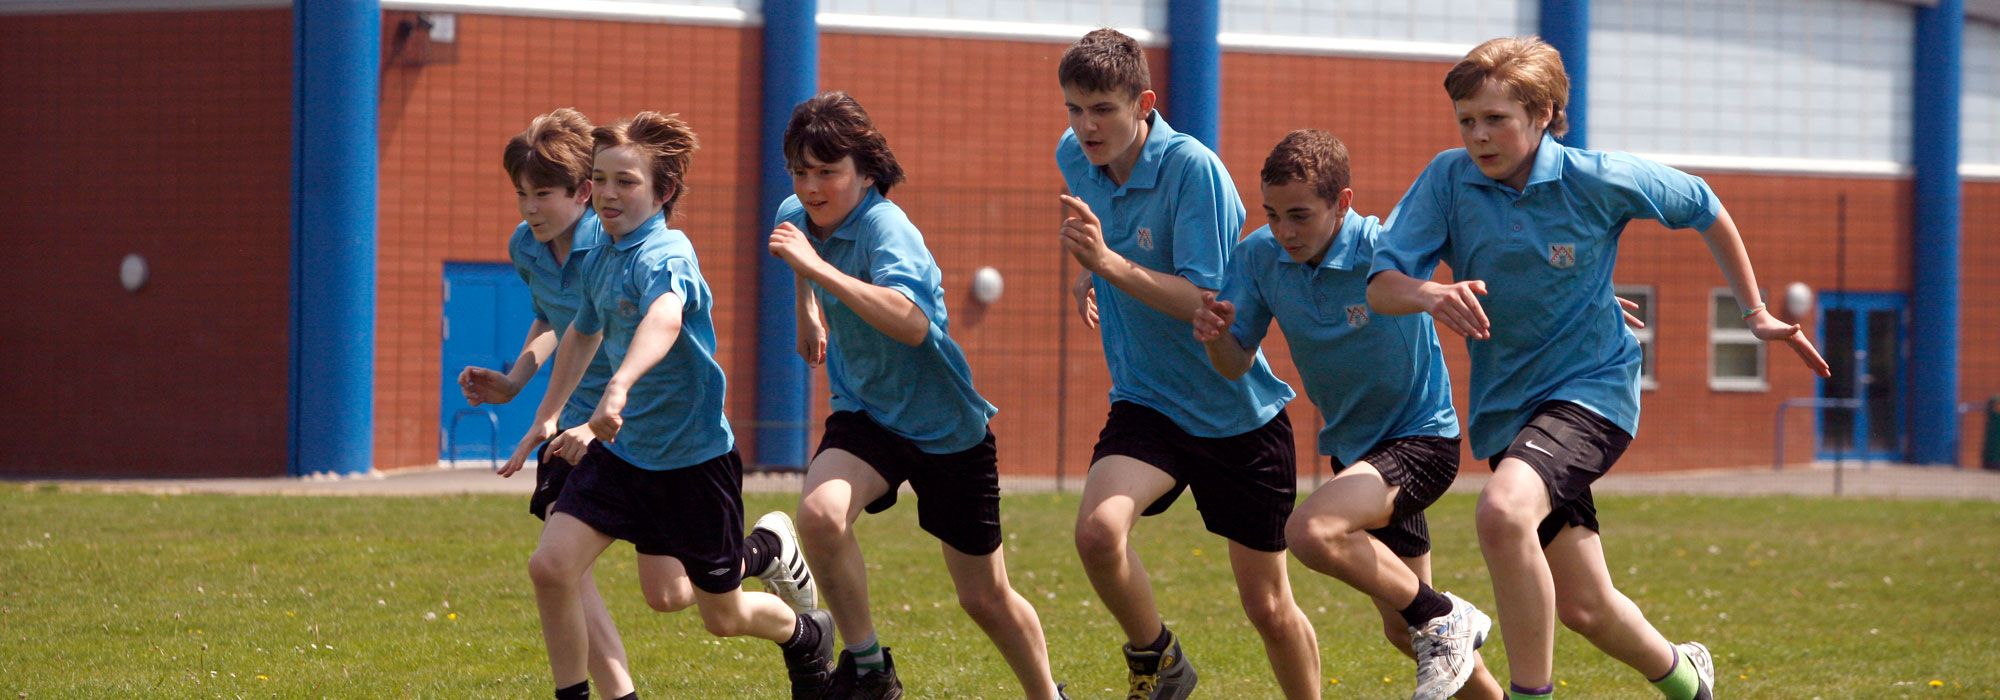 Boys athletics club in Wrexham